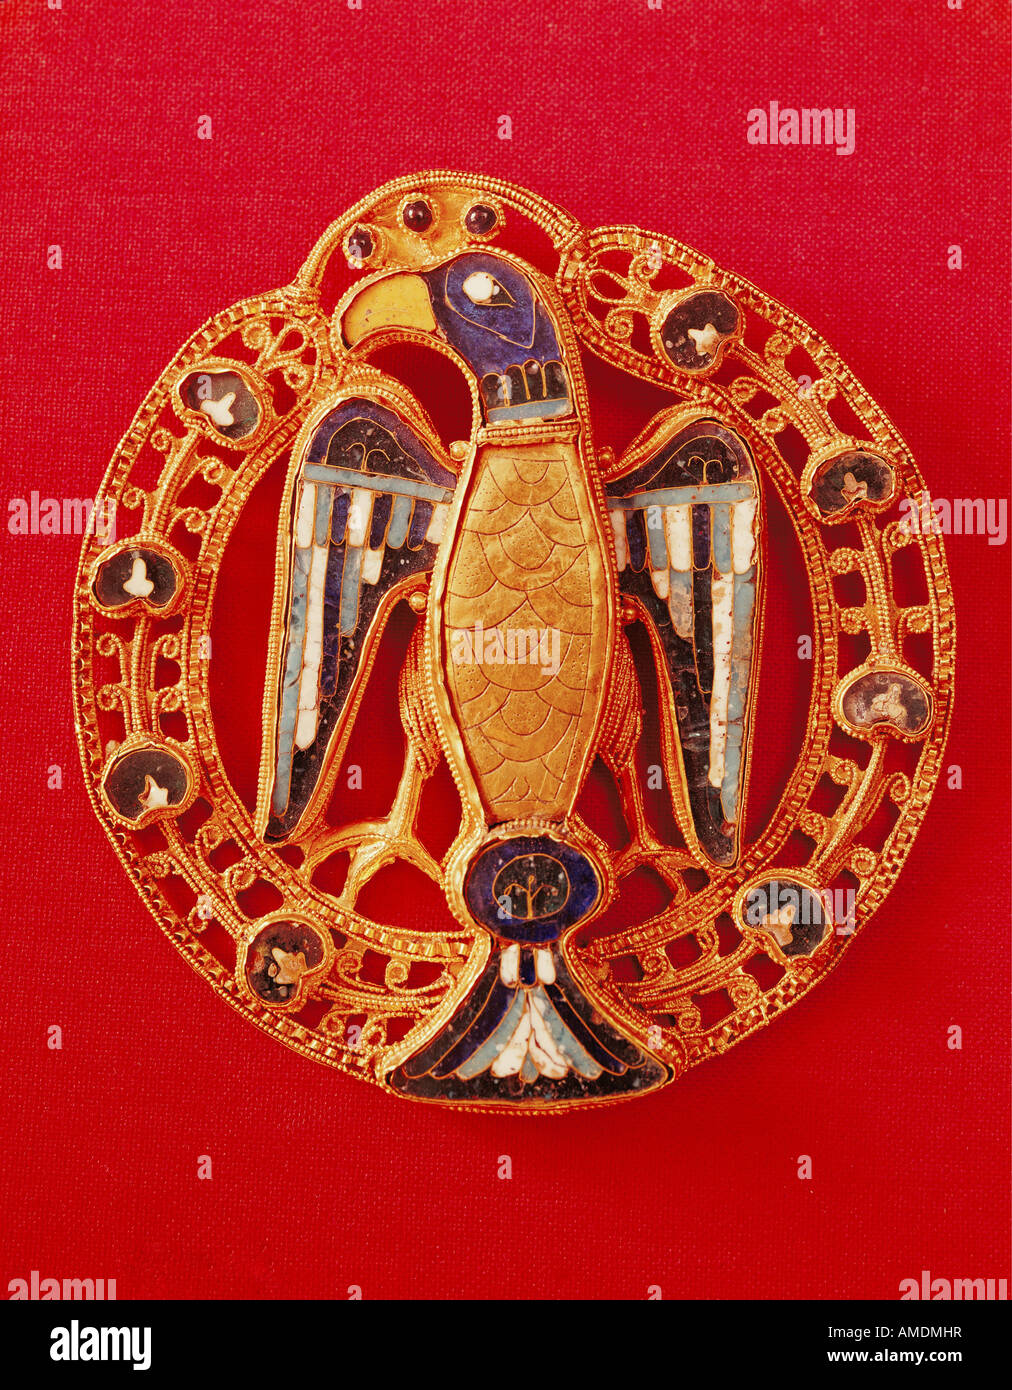 Belle arti, medioevo, gioielli, eagle perone della Imperatrice Gisela, circa 1025, Mittelrheinisches Landesmuseum Mainz, , artista del diritto d'autore non deve essere cancellata Foto Stock